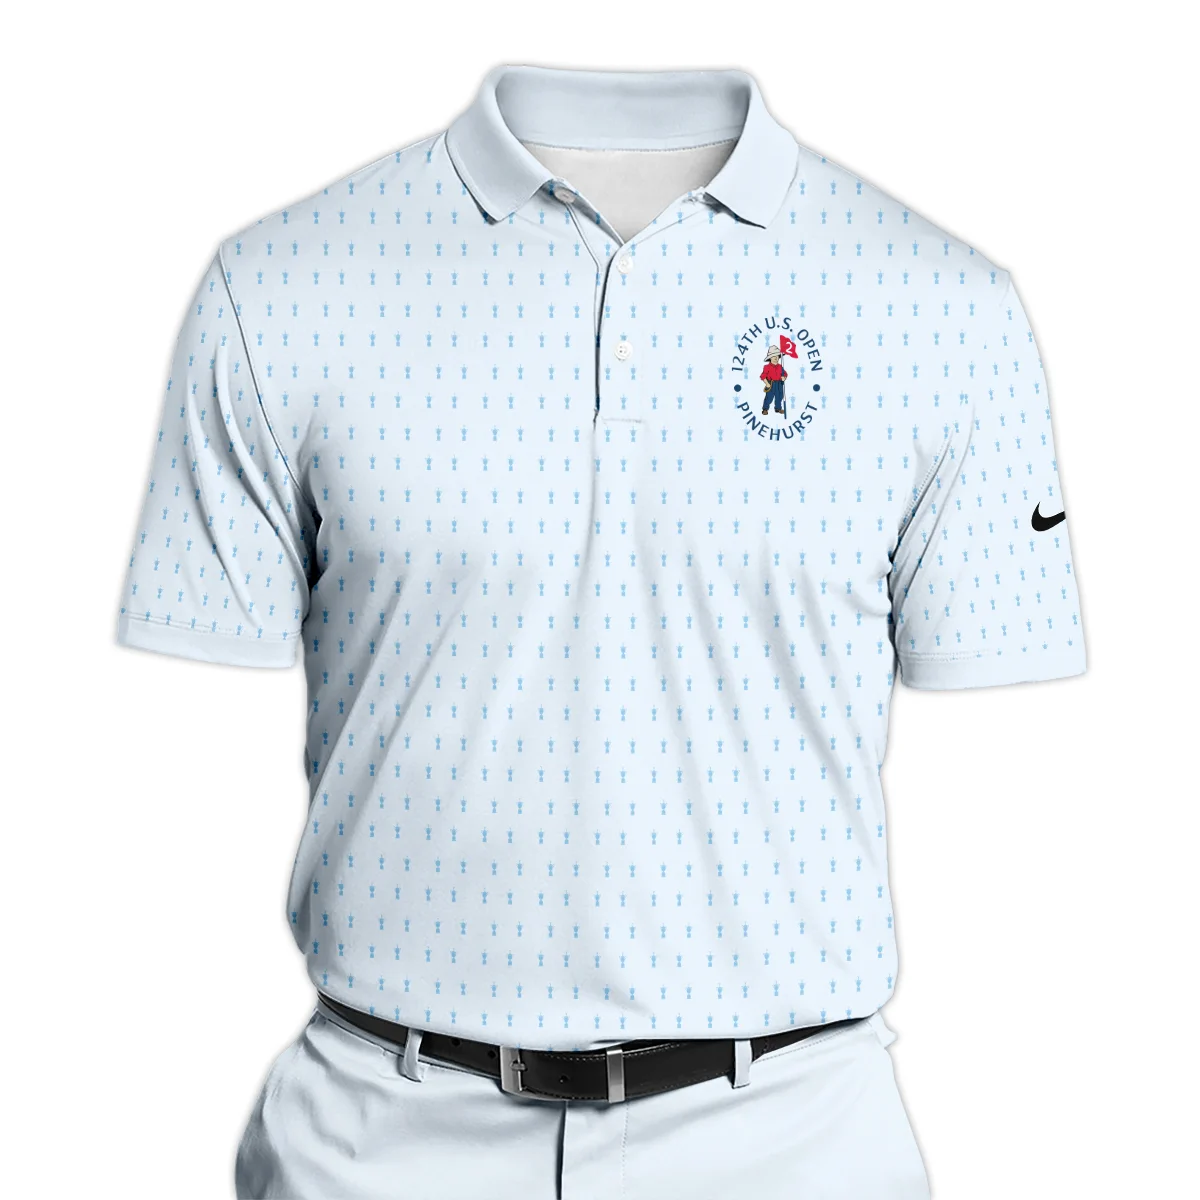 Golf Pattern Cup Light Blue Green 124th U.S. Open Pinehurst Nike Zipper Hoodie Shirt Style Classic Zipper Hoodie Shirt